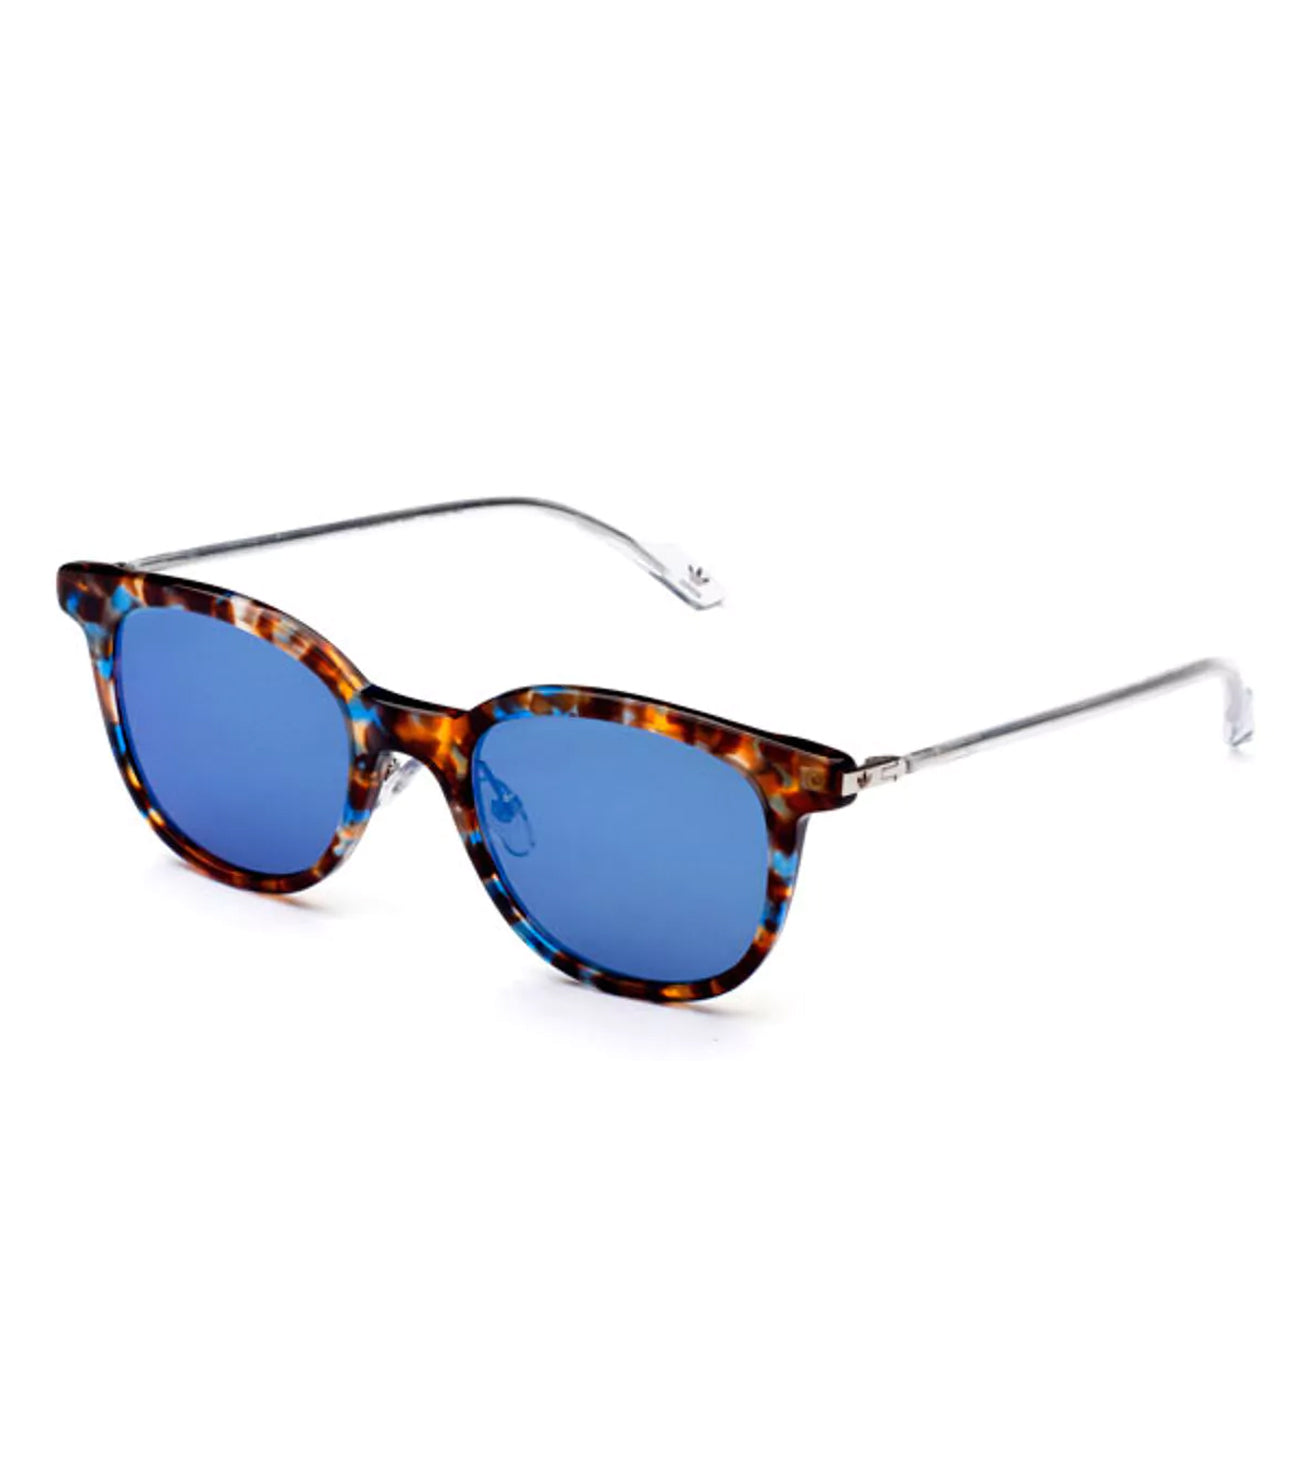 Adidas Originals Unisex Blue Square Sunglasses